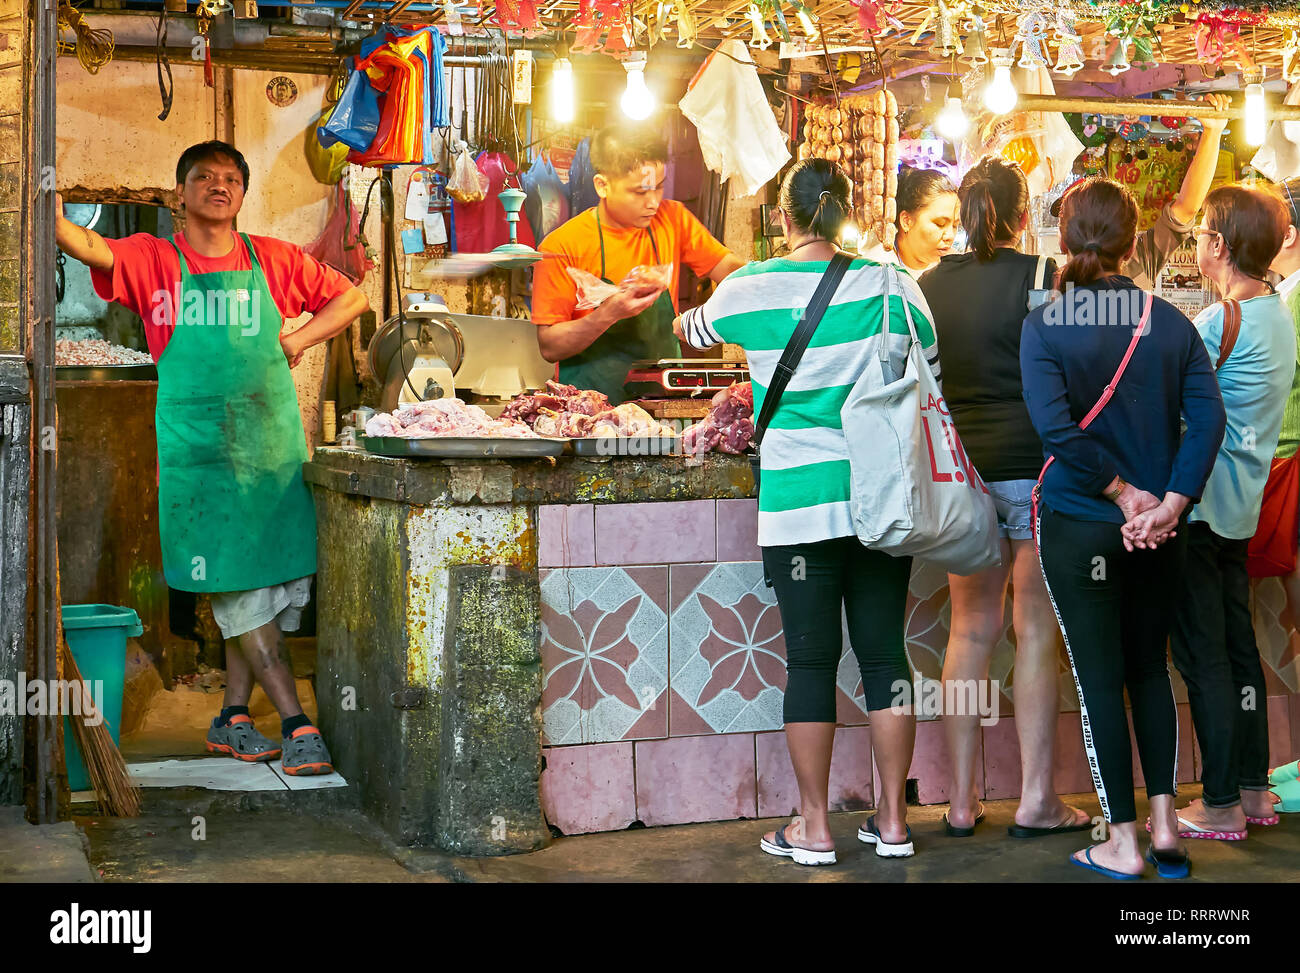 La ciudad de Baguio, Filipinas, provincia de Benguet - Diciembre 26, 2017: el grupo de mujeres la compra de carne en un establo en el centro Wet Market, el jefe viendo Foto de stock